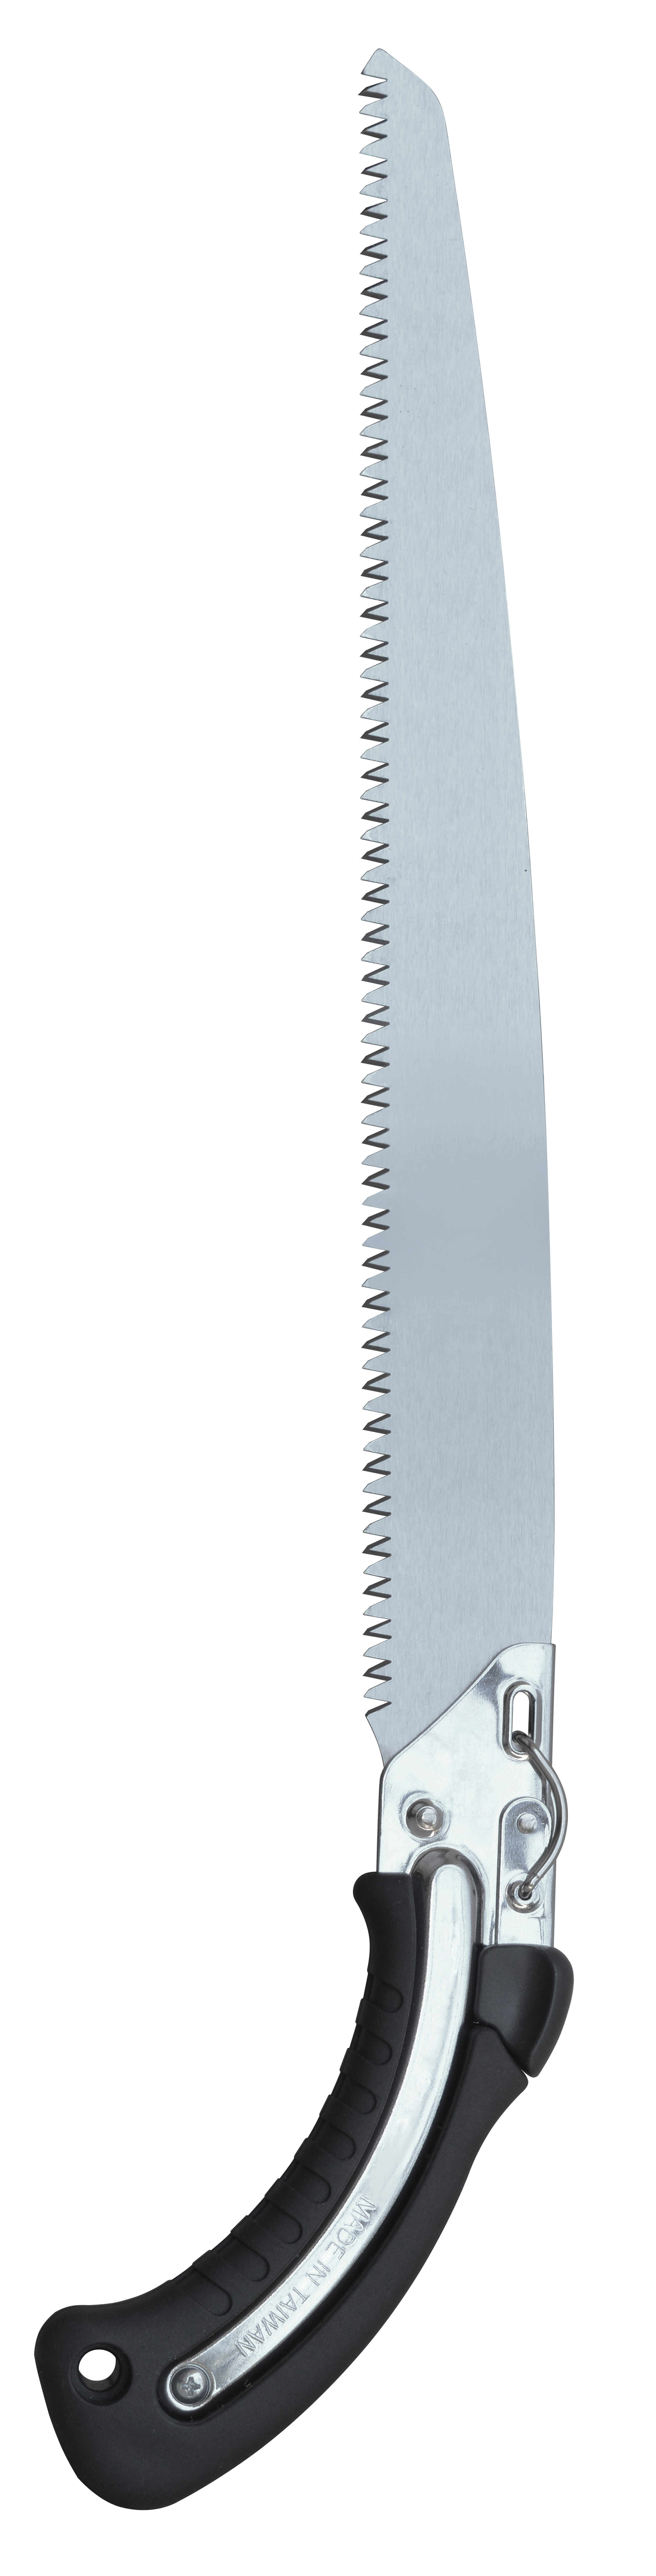 Afiladores de cuchillos de mano de grano 300/600 de doble cara para afilar  cuchillos de cocina, tijeras, herramientas de jardín con afilador de